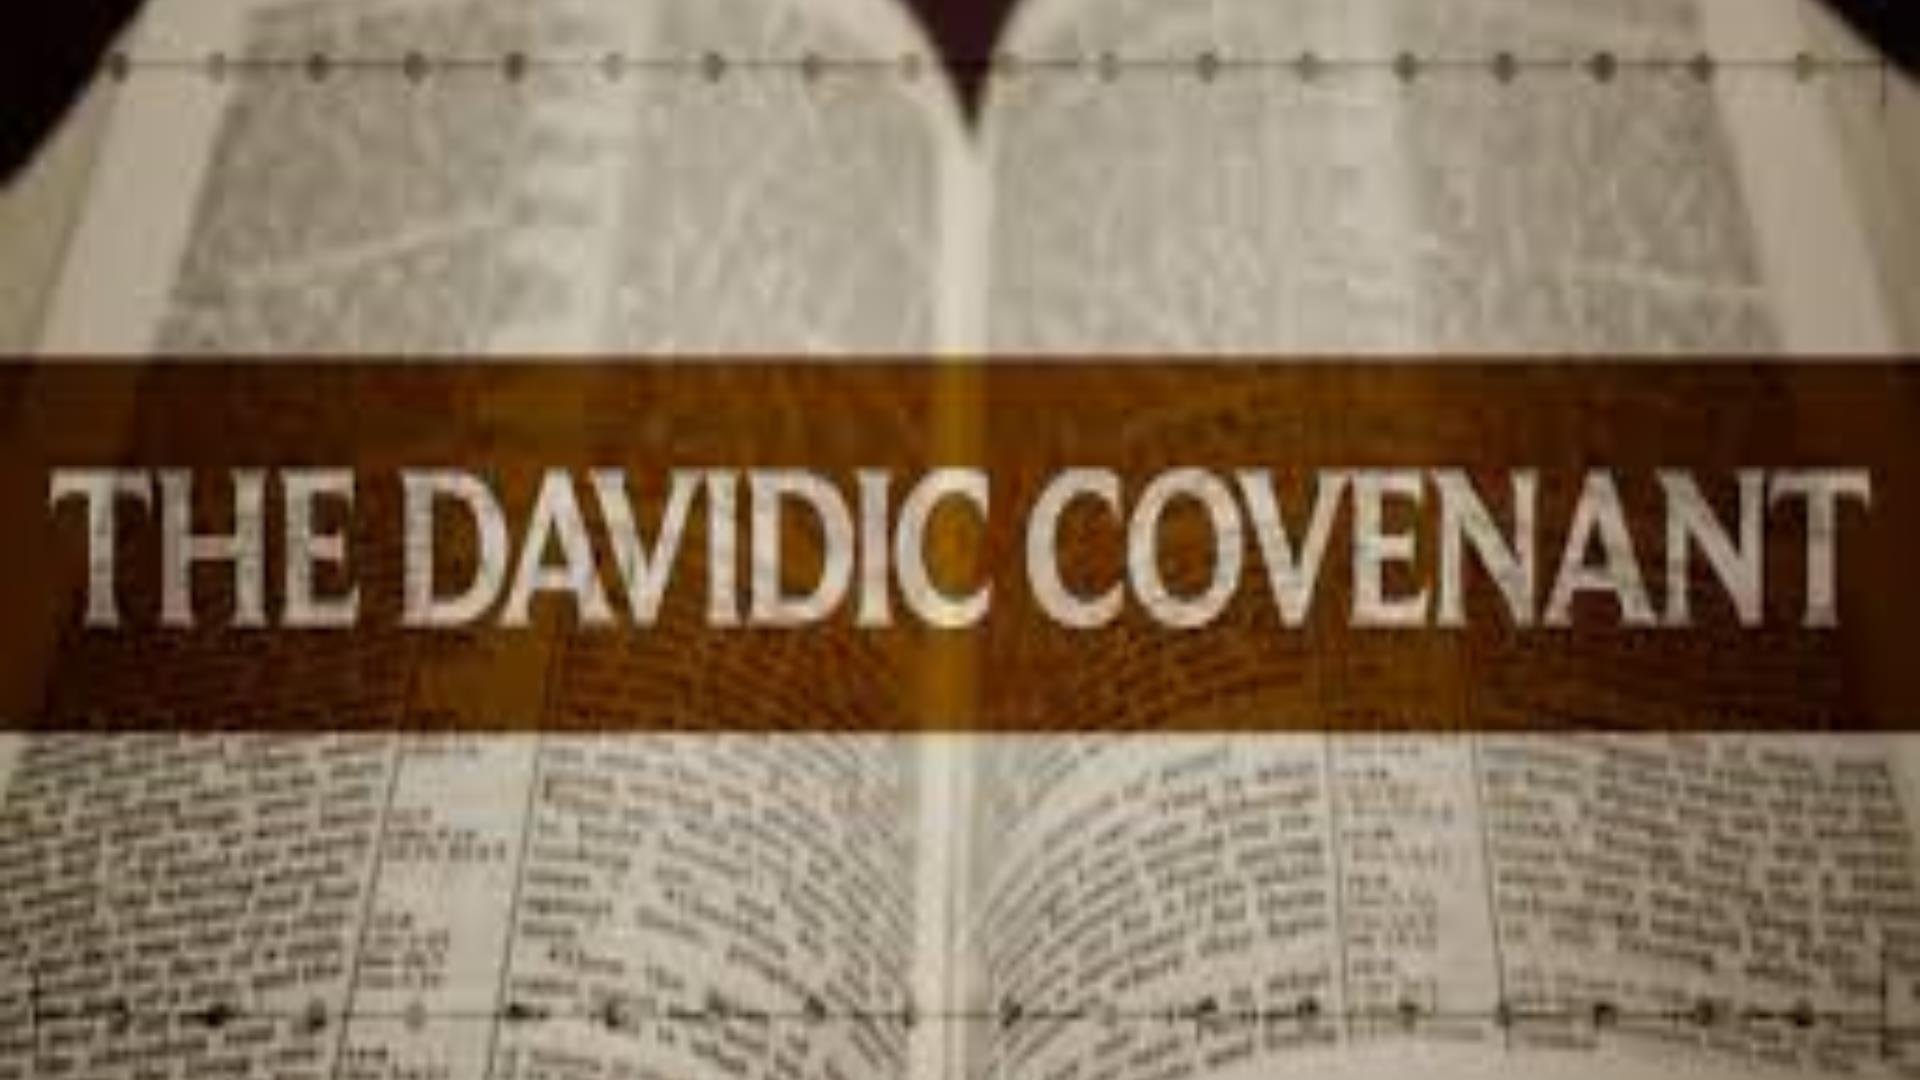 DAVIDIC COVENANT